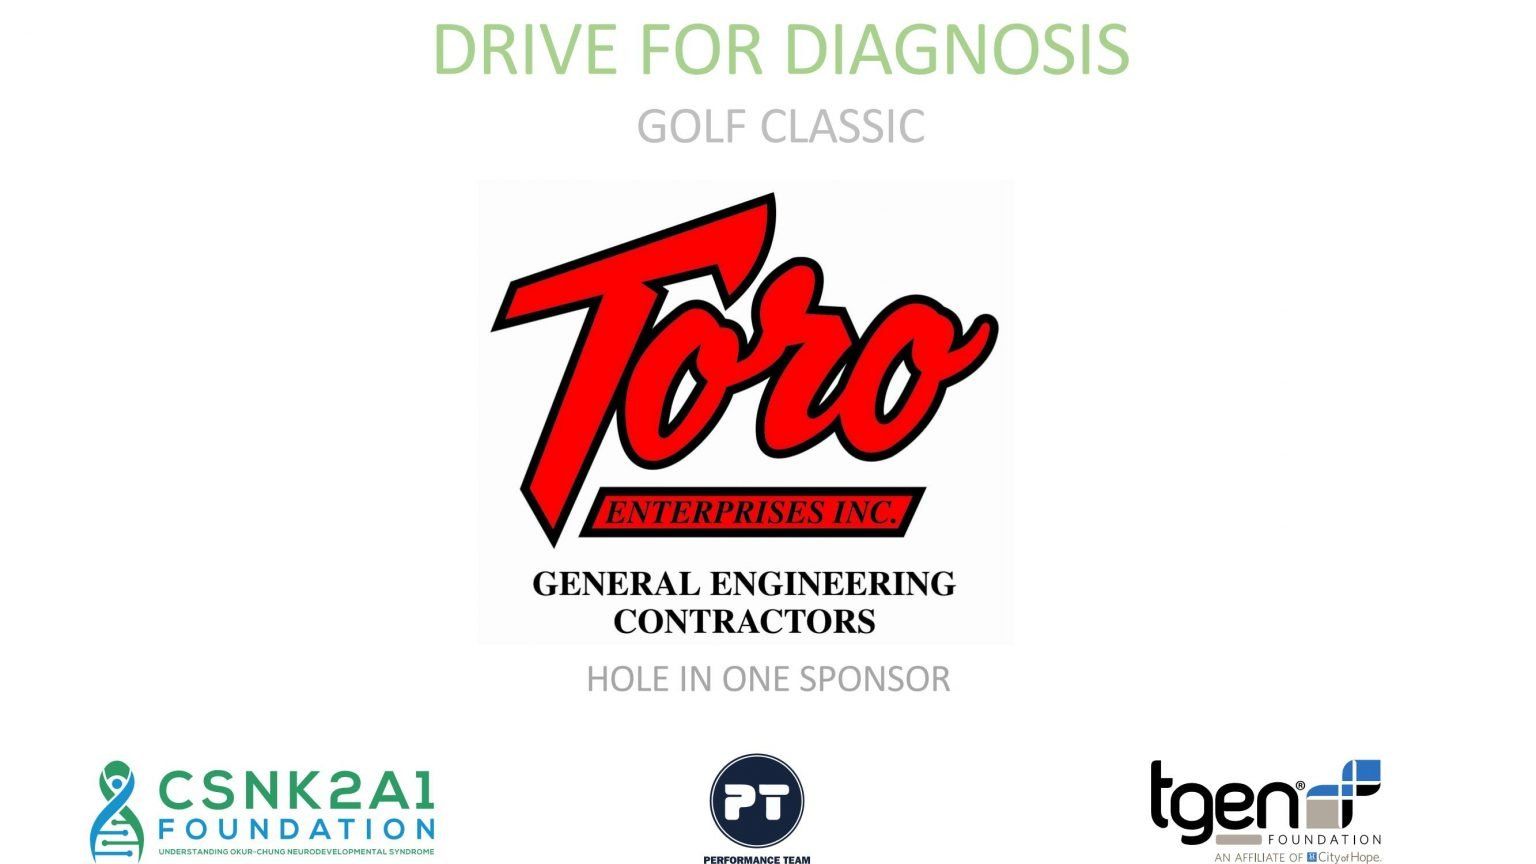 Hole in One Sponsor - Toro General Engineering Contractors